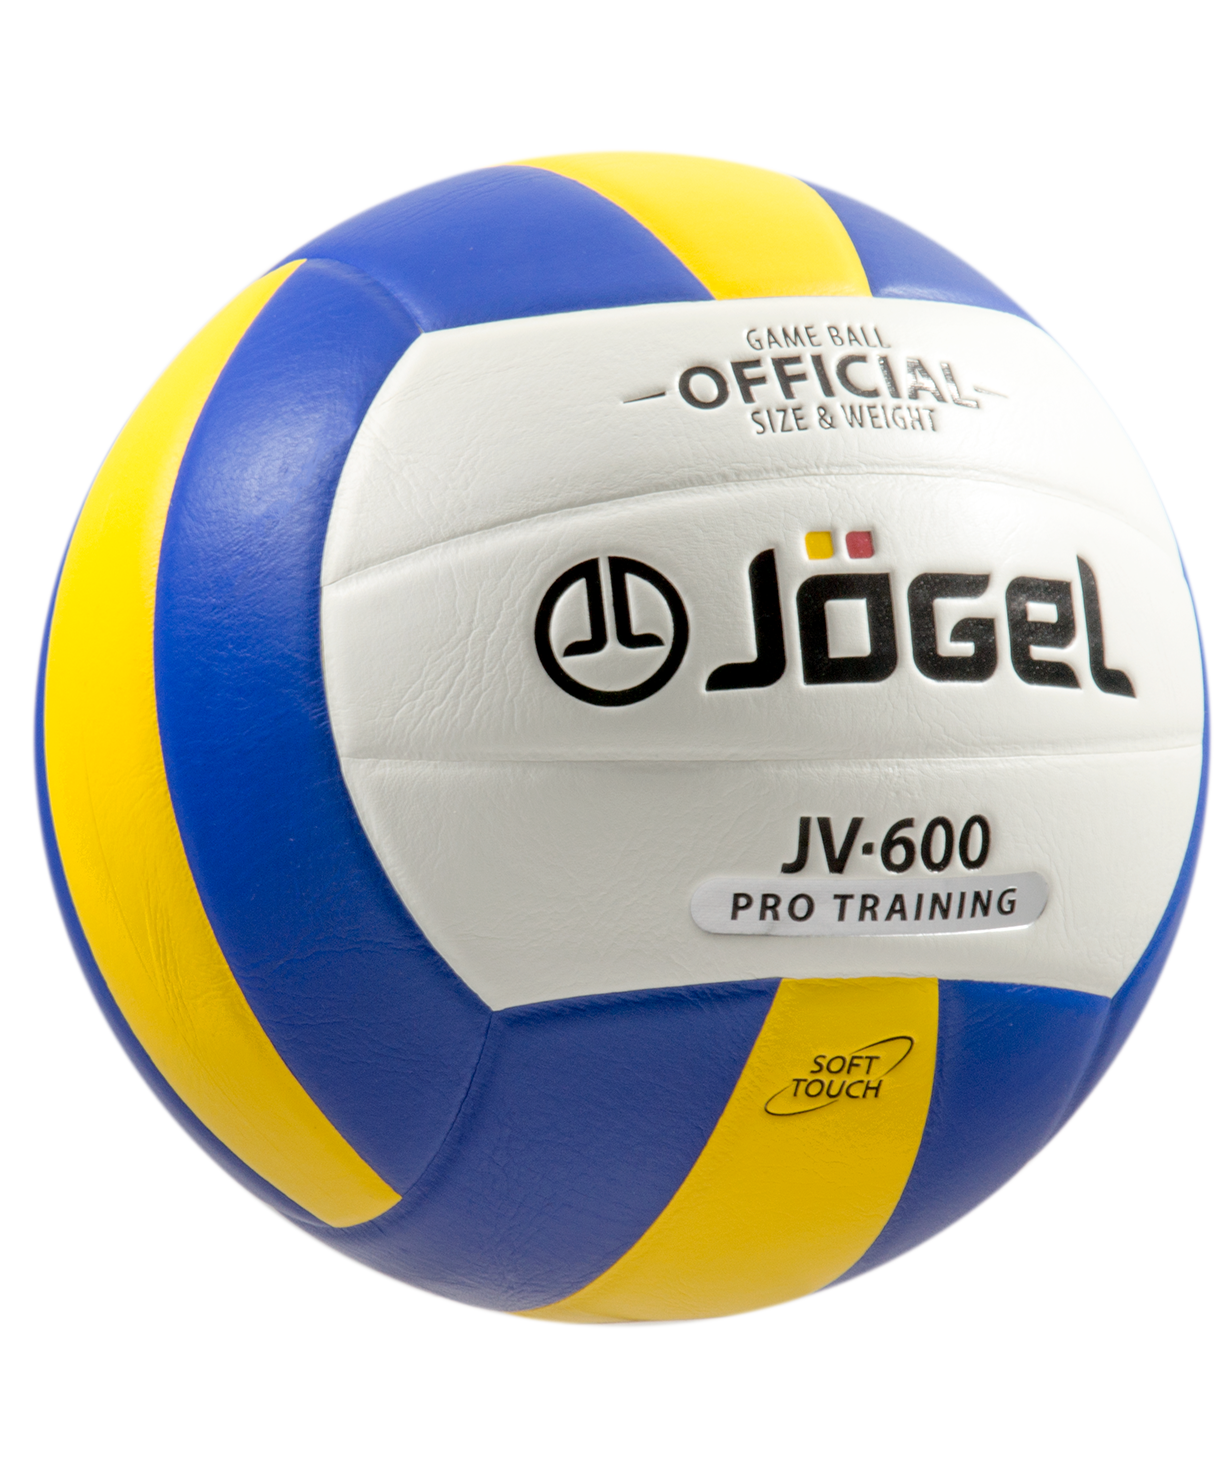 Мяч волейбольный Jogel JV-600